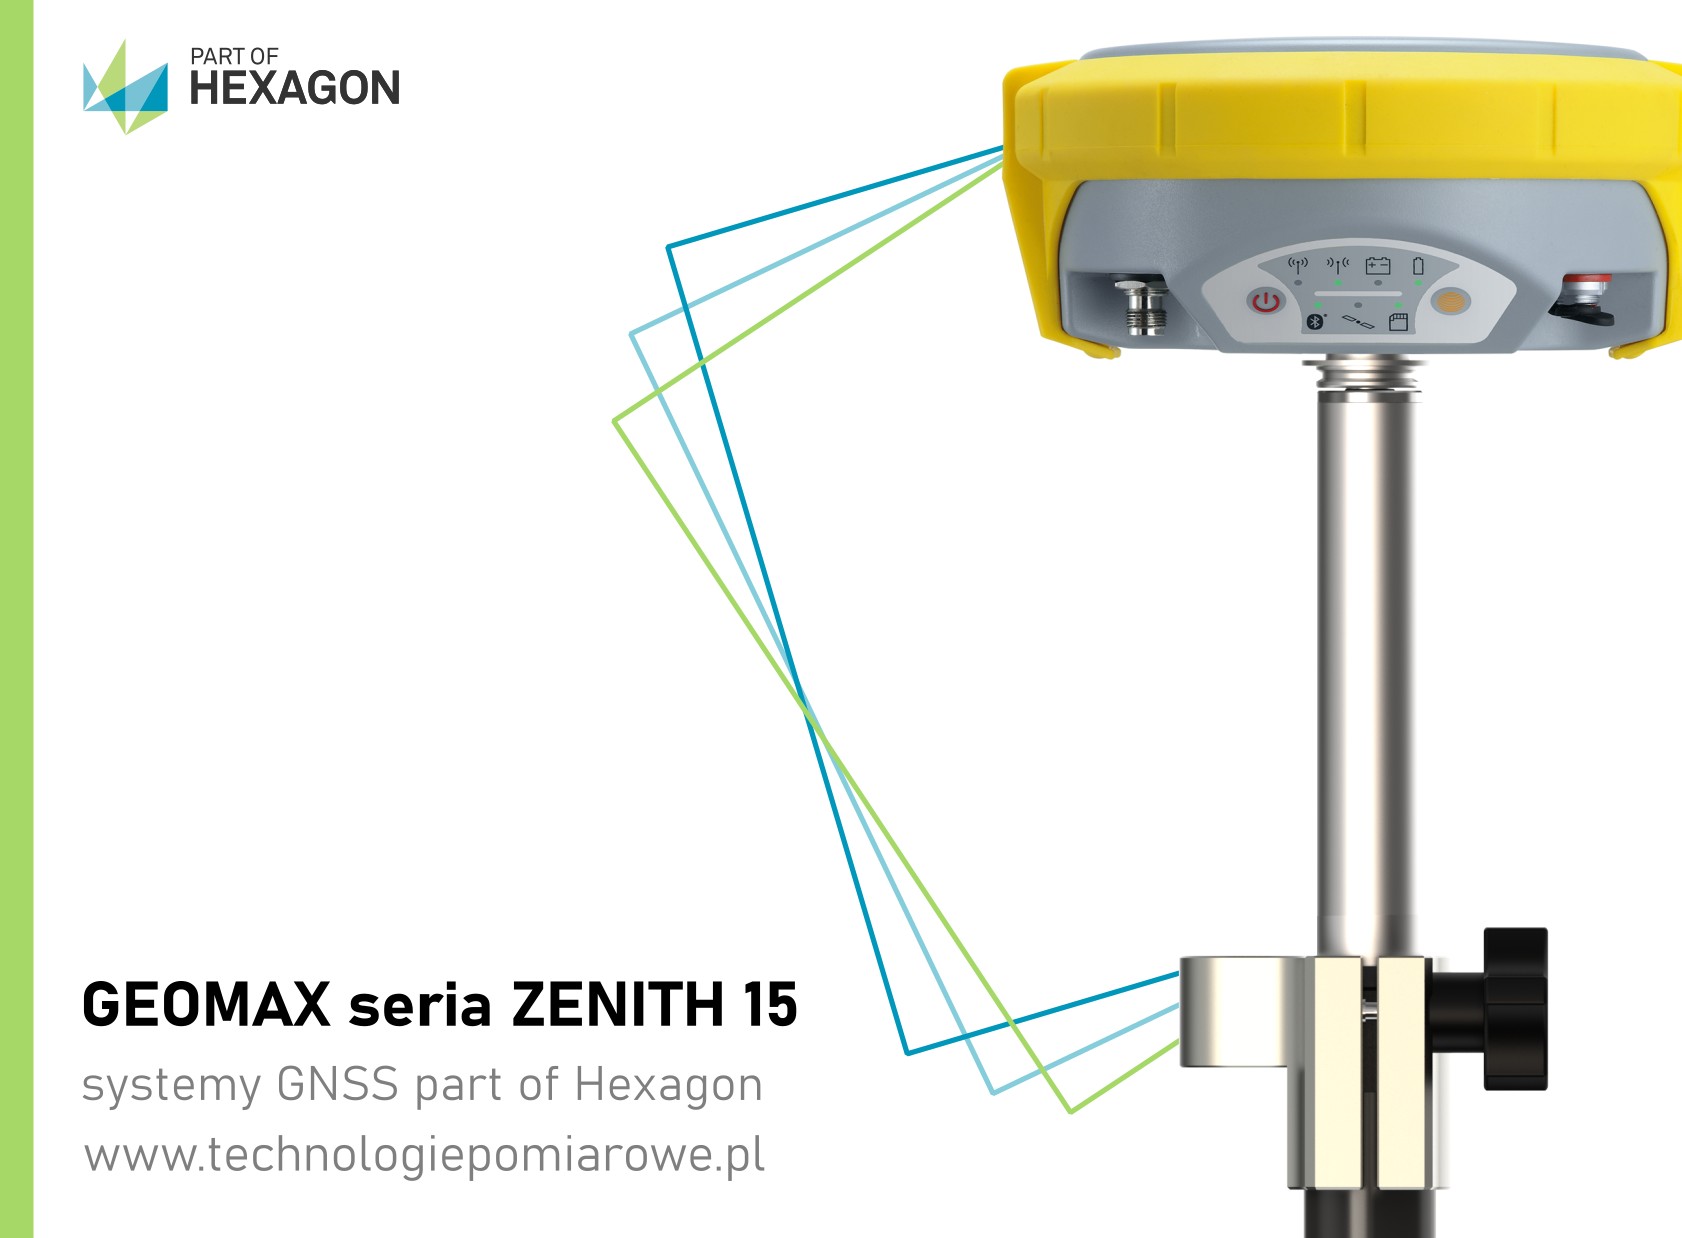 Profesjonalne zestawy GNSS odbiorniki geodezyjne RTK Geomax seria Zenith 15 oraz Zenith 25; Używane prefesjonalne odbiorniki GNSS szwajcarskiej marki Geomax seriaz Zenith 15; Pełna oferta systemów GNSS odbiorniki marki: Geomax; używany zestaw rtk gnss marki Geomax model Zenith 15; w naszejofercie również inne używane odbiorniki gnss rtk różnych producentów; kolida; ruide; stonex; chc; hi-target; komis sprzętu geodezyjnego; używany zestaw RTK; chiński odbiornik rtk; tani odbiornik gps rtk; zestaw gps rtk; ranking gps geodezyjnych; zestaw gnss rtk; ruide gps opinie; odbiornik kolida; ruide nova r6; jaki gps dla geodety; profesjonalne rozwiązania pomiarowe zestawy odbiorników gnss rtk; odbiornik gnss rtk south; south galaxy g1; odbiornik rtk south galaxy g6; tani zestaw rtk; zestaw gps rtk cena; poleasingowy sprzęt geodezyjny; chiński gps geodezyjny; zestaw gnss; odbiornik rtk; odbiornik rtk gnss ruide; odbiornik ruide; ruide comet r8i; ruide pulsar; ruide r90i; ruide r6p; ruide pulsar r6p; ruide opinie; odbiornik rtk gnss south; south gps; gps gnss; używany odbiornik gps rtk; Pełna oferta systemów GNSS odbiorniki marki: Geomax; używany zestaw rtk gnss marki Geomax model Zenith 10; w naszejofercie również inne używane odbiorniki gnss rtk różnych producentów; kolida; ruide; stonex; chc; hi-target; komis sprzętu geodezyjnego; używany zestaw RTK; chiński odbiornik rtk; tani odbiornik gps rtk; zestaw gps rtk; ranking gps geodezyjnych; zestaw gnss rtk; ruide gps opinie; odbiornik kolida; ruide nova r6; jaki gps dla geodety; profesjonalne rozwiązania pomiarowe zestawy odbiorników gnss rtk; odbiornik gnss rtk south; south galaxy g1; odbiornik rtk south galaxy g6; tani zestaw rtk; zestaw gps rtk cena; poleasingowy sprzęt geodezyjny; chiński gps geodezyjny; zestaw gnss; odbiornik rtk; odbiornik rtk gnss ruide; odbiornik ruide; ruide comet r8i; ruide pulsar; ruide r90i; ruide r6p; ruide pulsar r6p; ruide opinie; odbiornik rtk gnss south; south gps; gps gnss; używany odbiornik gps rtk; odbiornik geodezyjny Geomax Zenith 10; Zenith 35 PRO; GPS Zenith; Odbiornik GPS GEOMAX; GeoMax Zenith 20; GeoMax opinie; komis sprzętu geodezyjnego; GeoMax zenith 40; Technologie pomiarowe Geomax GPS geodezyjny; Geomax szwajcaria; Komis geodezyjny; Geoline Bydgoszcz; Geoline Geomax; sprzęt pomiarowy Geomax; Nowy model odbiornika GPS Zenith35; Geomax GPS Zenith 20; Tachimetr GEOMAX; GeoMax Zoom 70; Tachimetr geoline; GPS GEOMAX cena; Geoline sklep; Tachimetr 3D; Komis geodezyjny odbiornik Geomax GPS GLONASS; GeoExpo store komis geodezyjny;